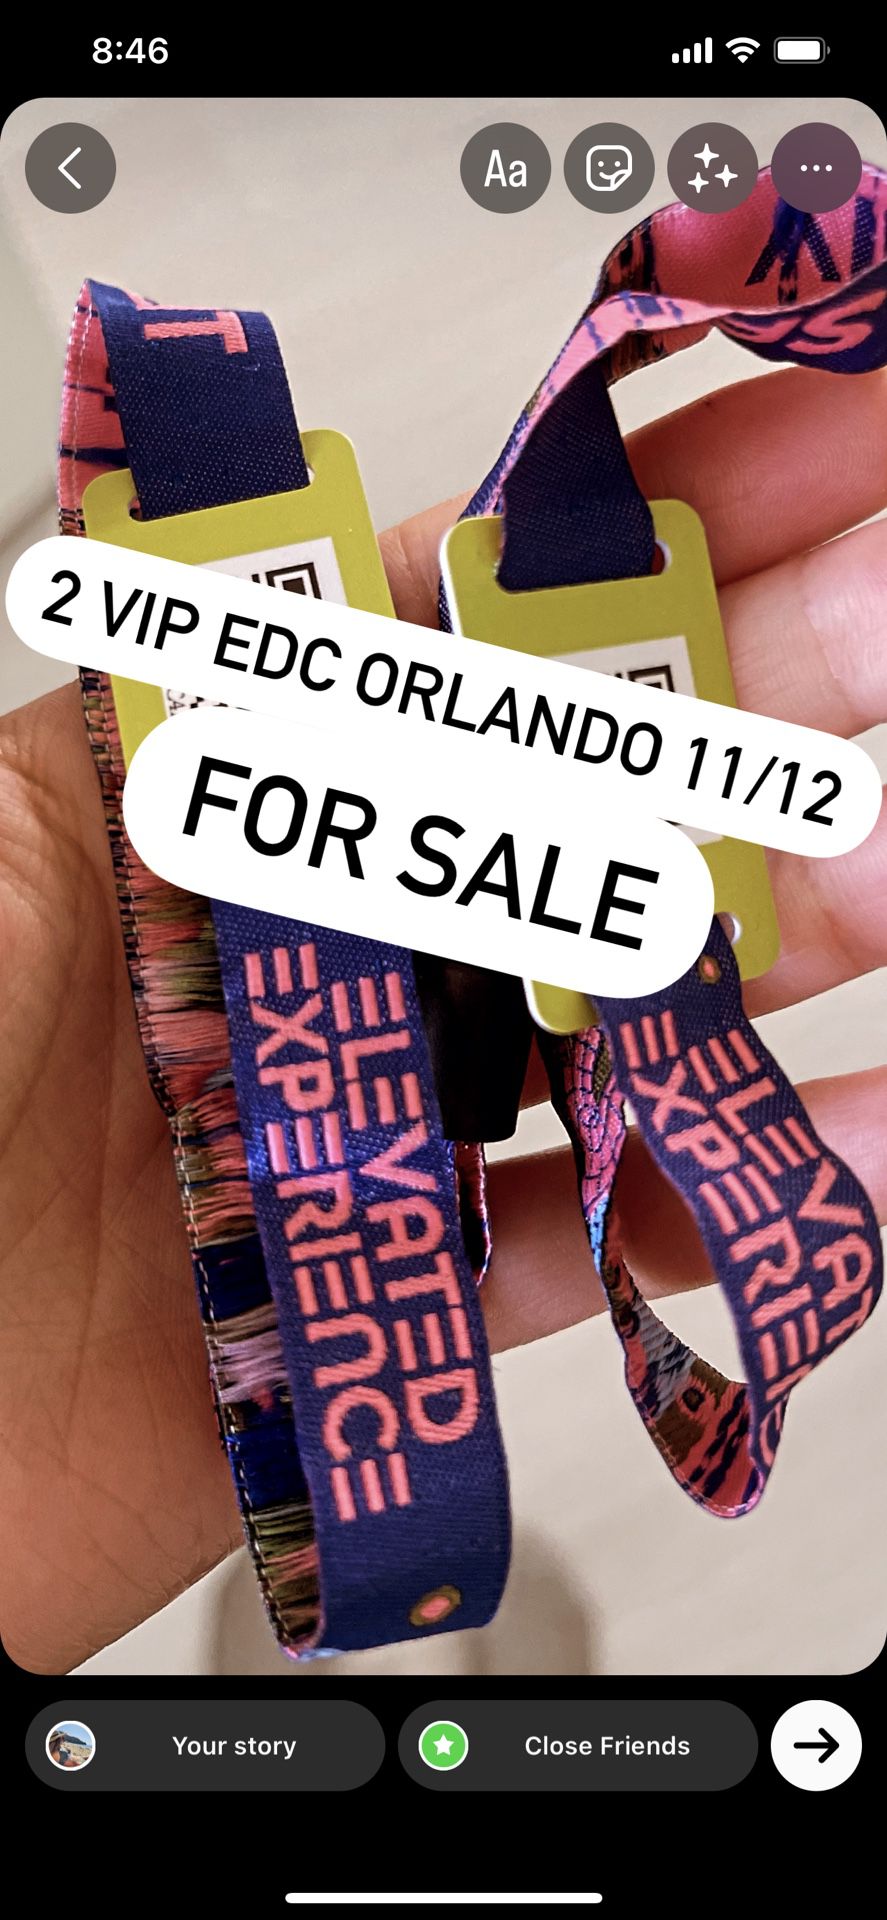 2 VIP EDC ORLANDO WRISTBANDS 11/12 $400  OBO